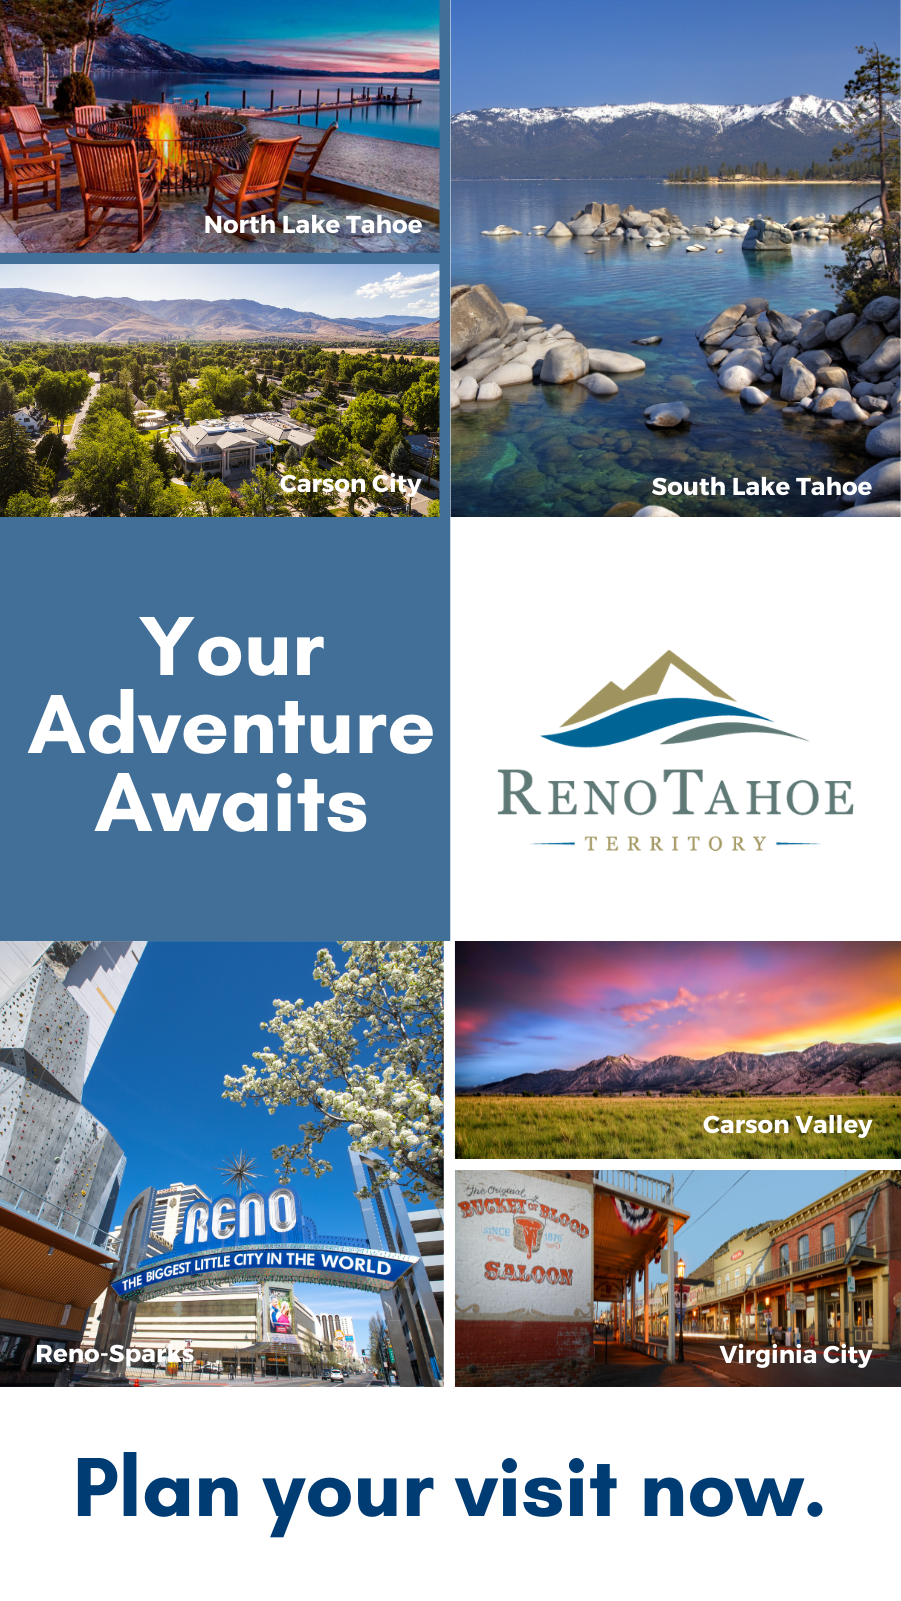 Reno Tahoe Territory Ad